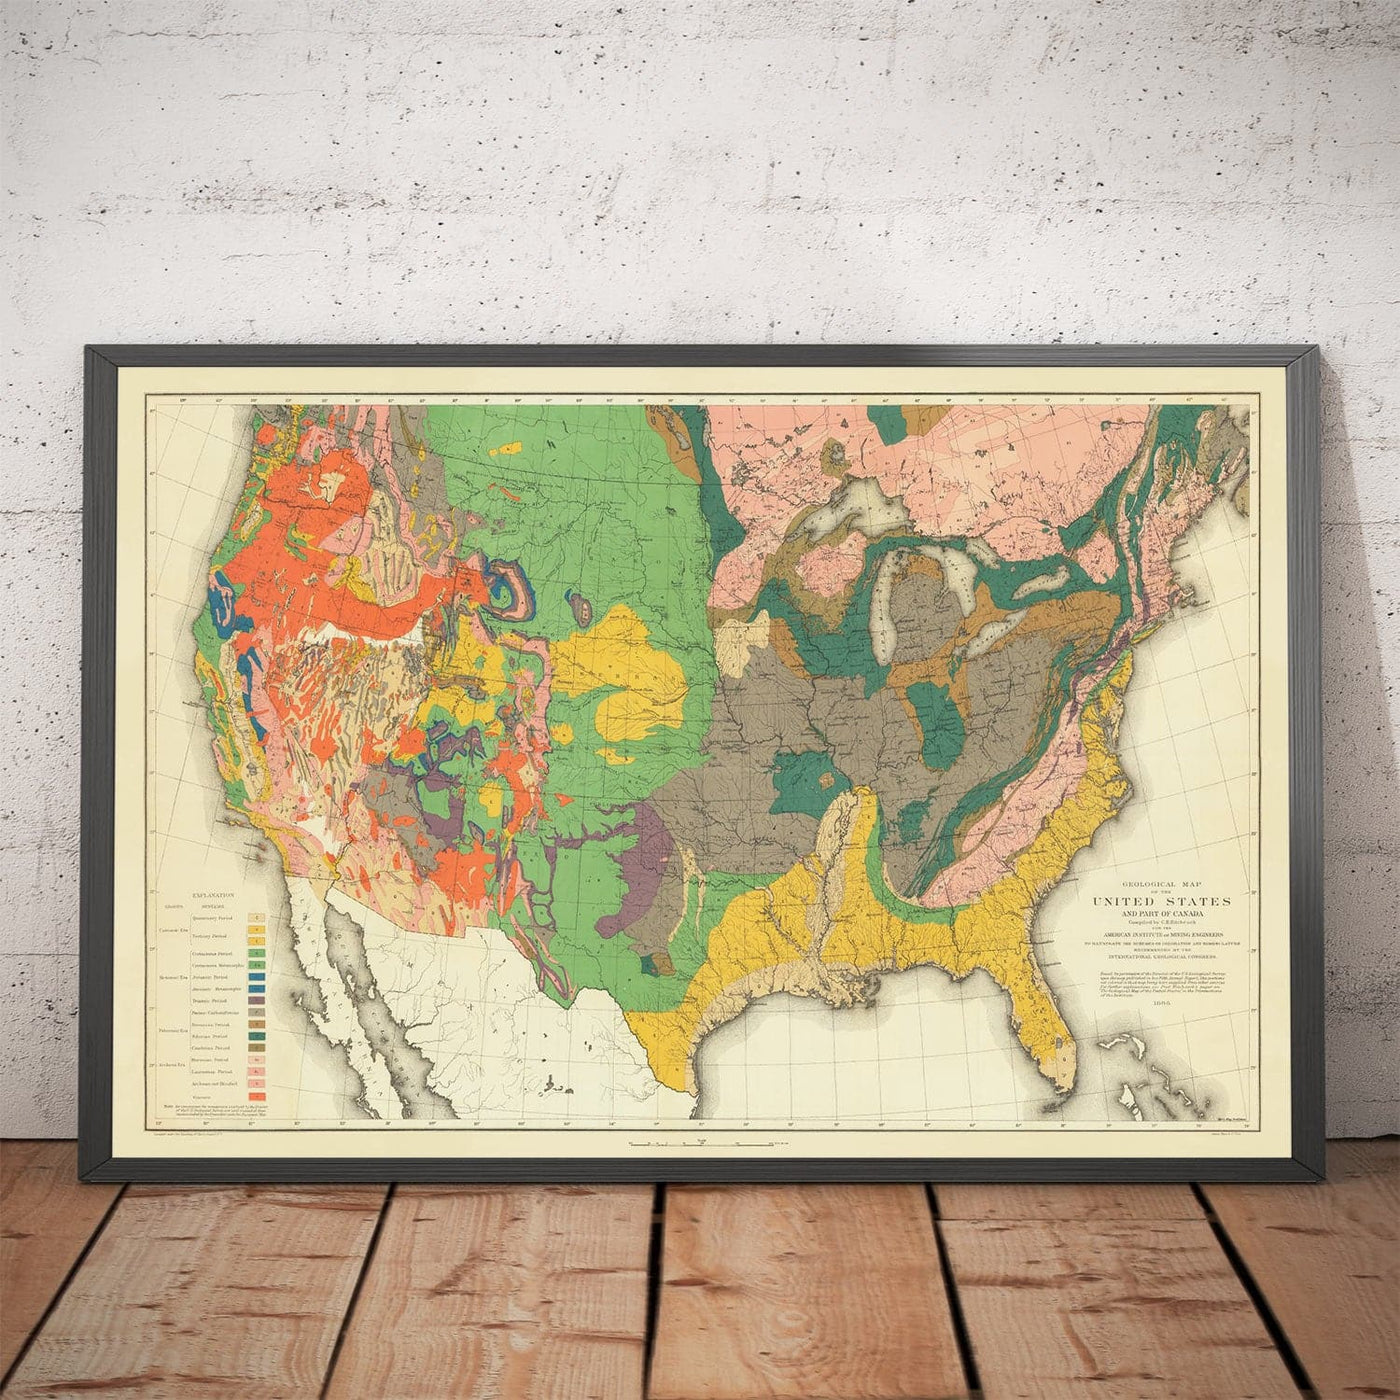 Seltene alte Geologie-Karte von USA & Kanada, 1886 von Charles Henry Hitchcock